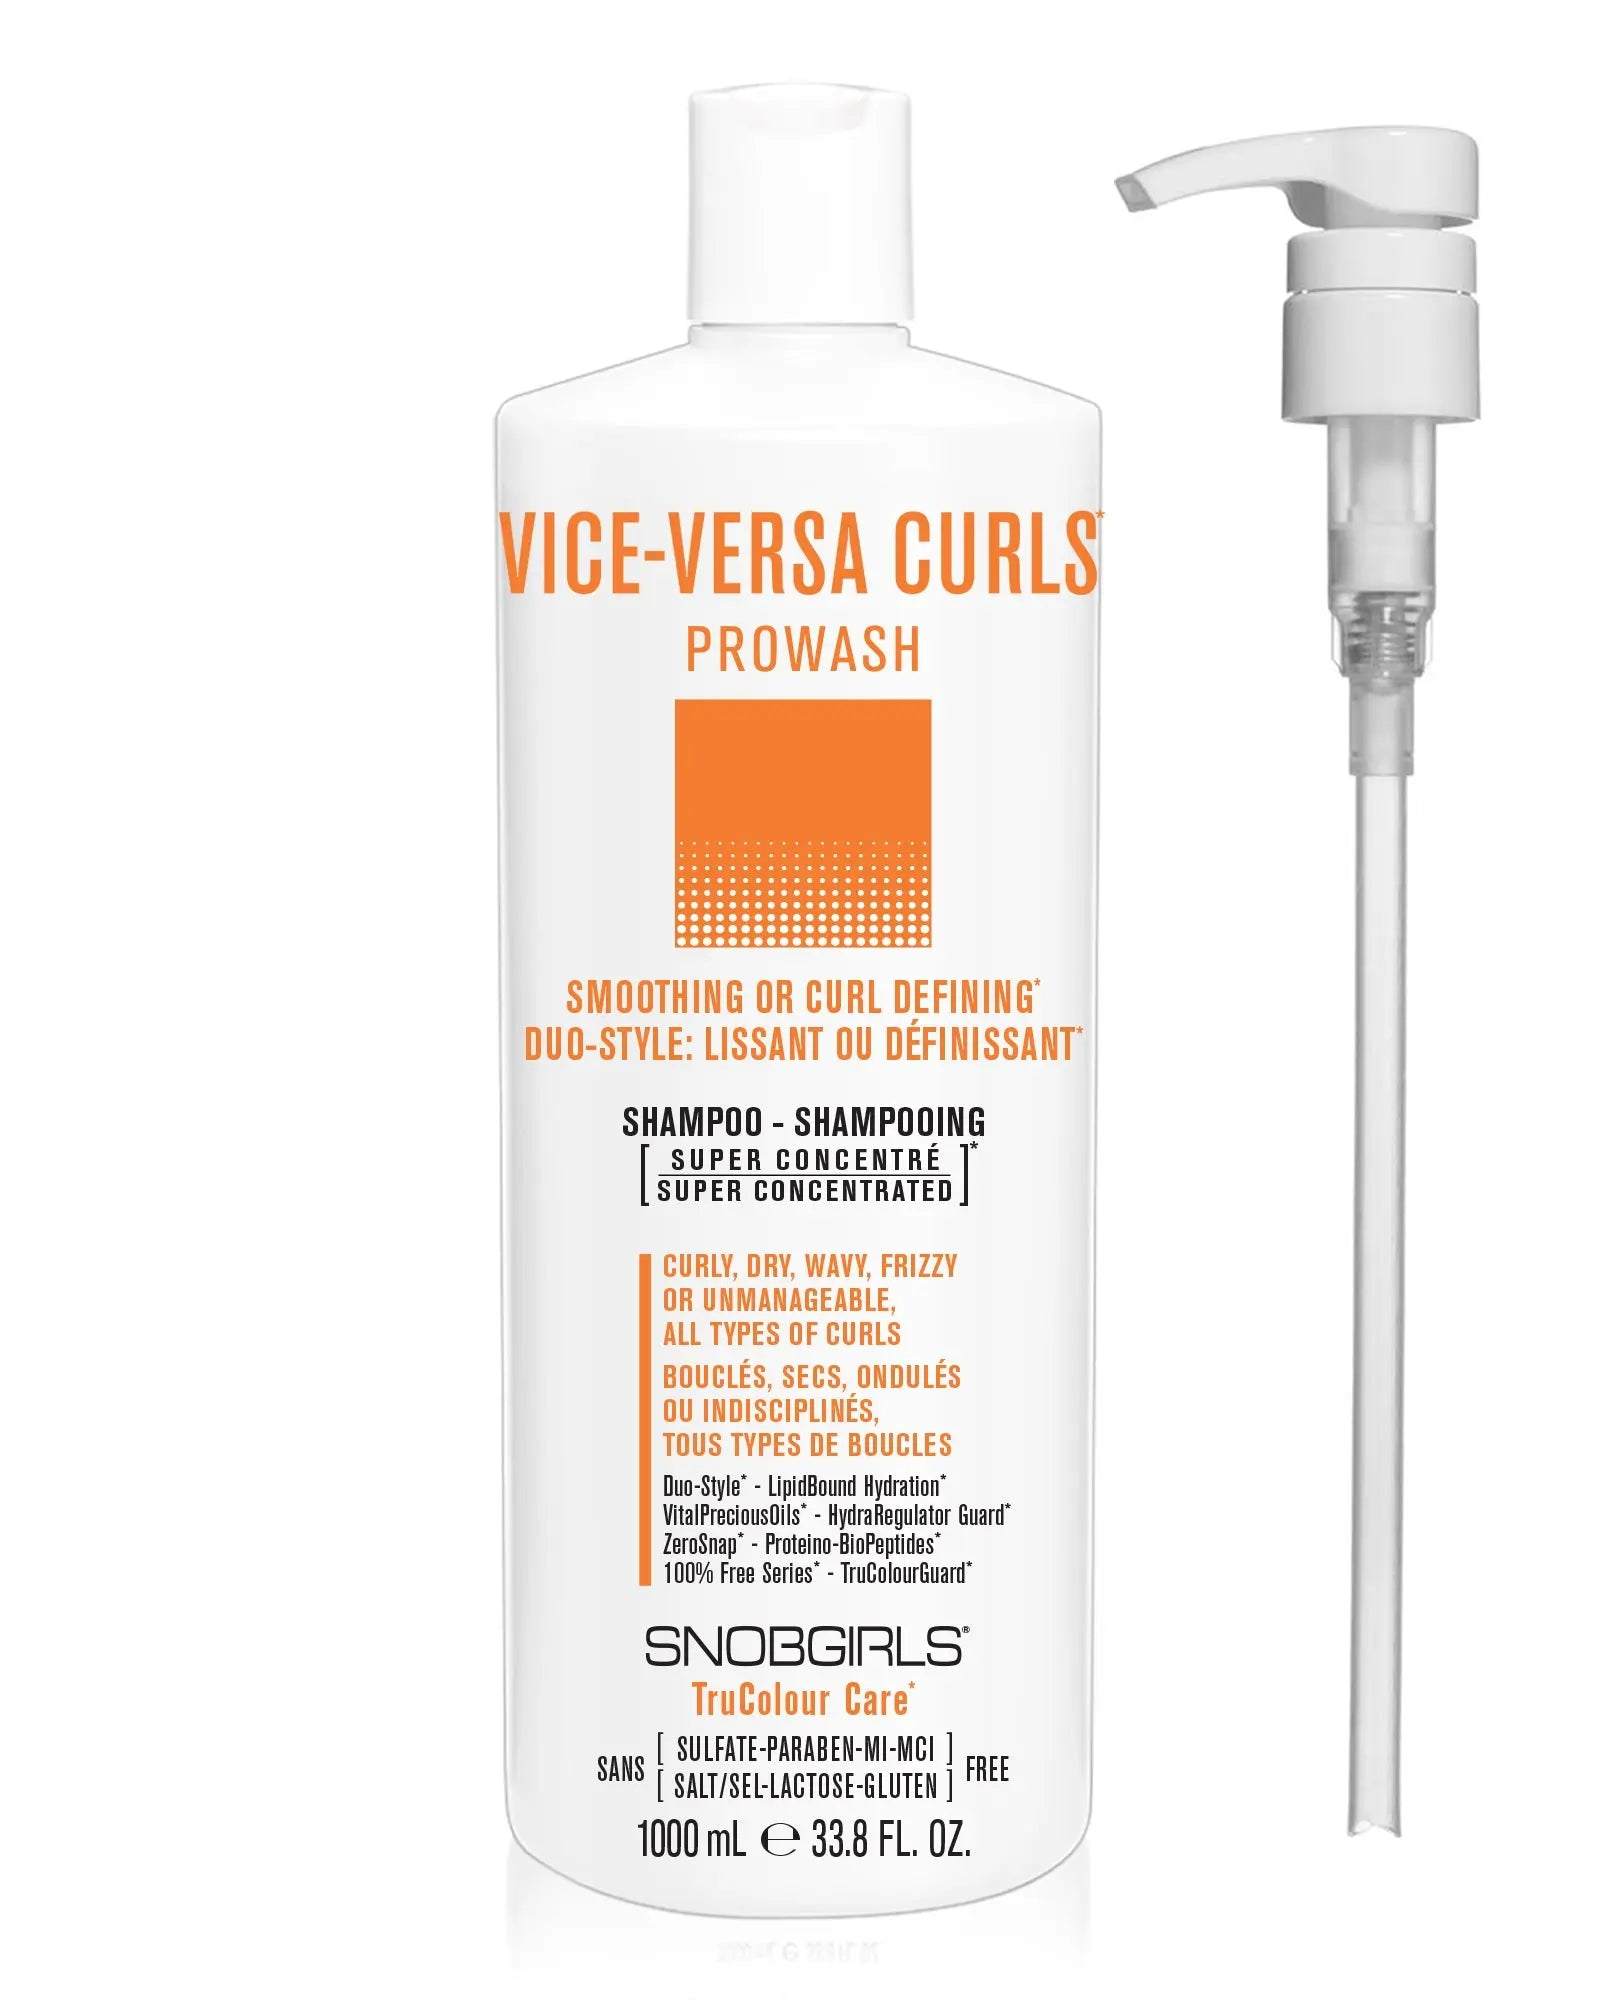 VICE-VERSA CURLS Prowash Vegan Hair Shampoo & Pump SNOBGIRLS